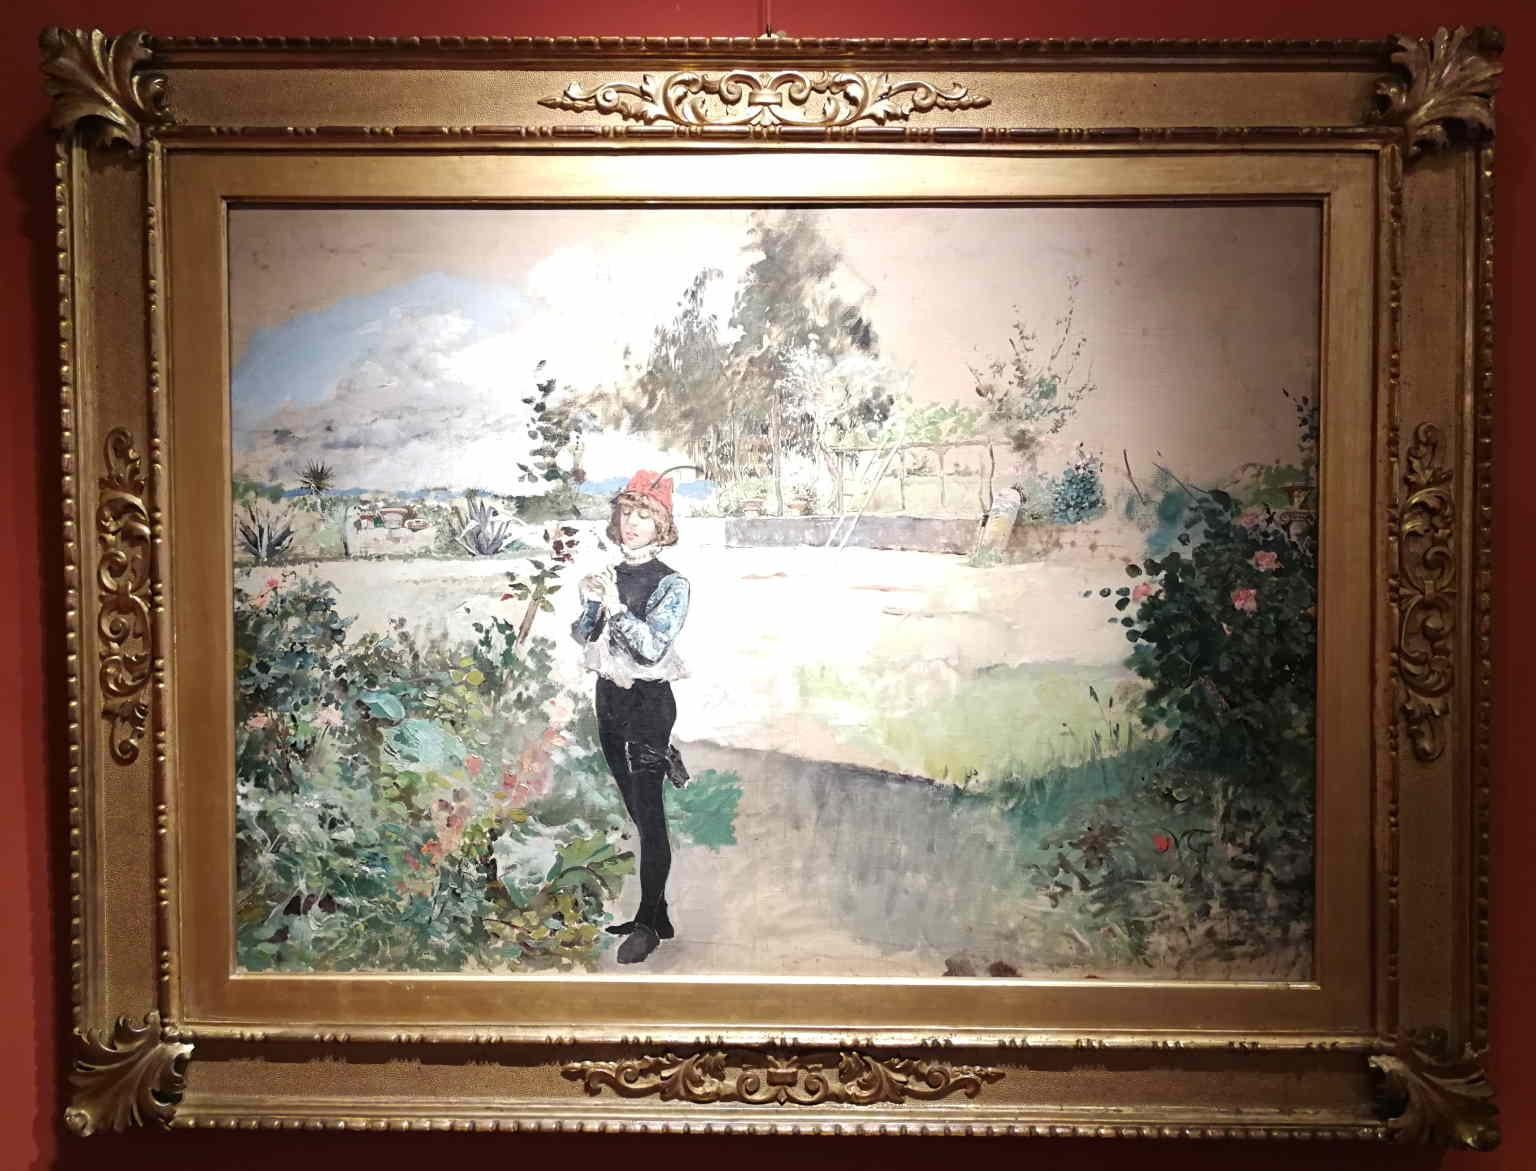 Florentine Signed Gordigiani Portrait Landscape Painting 19th century oil canvas For Sale 1